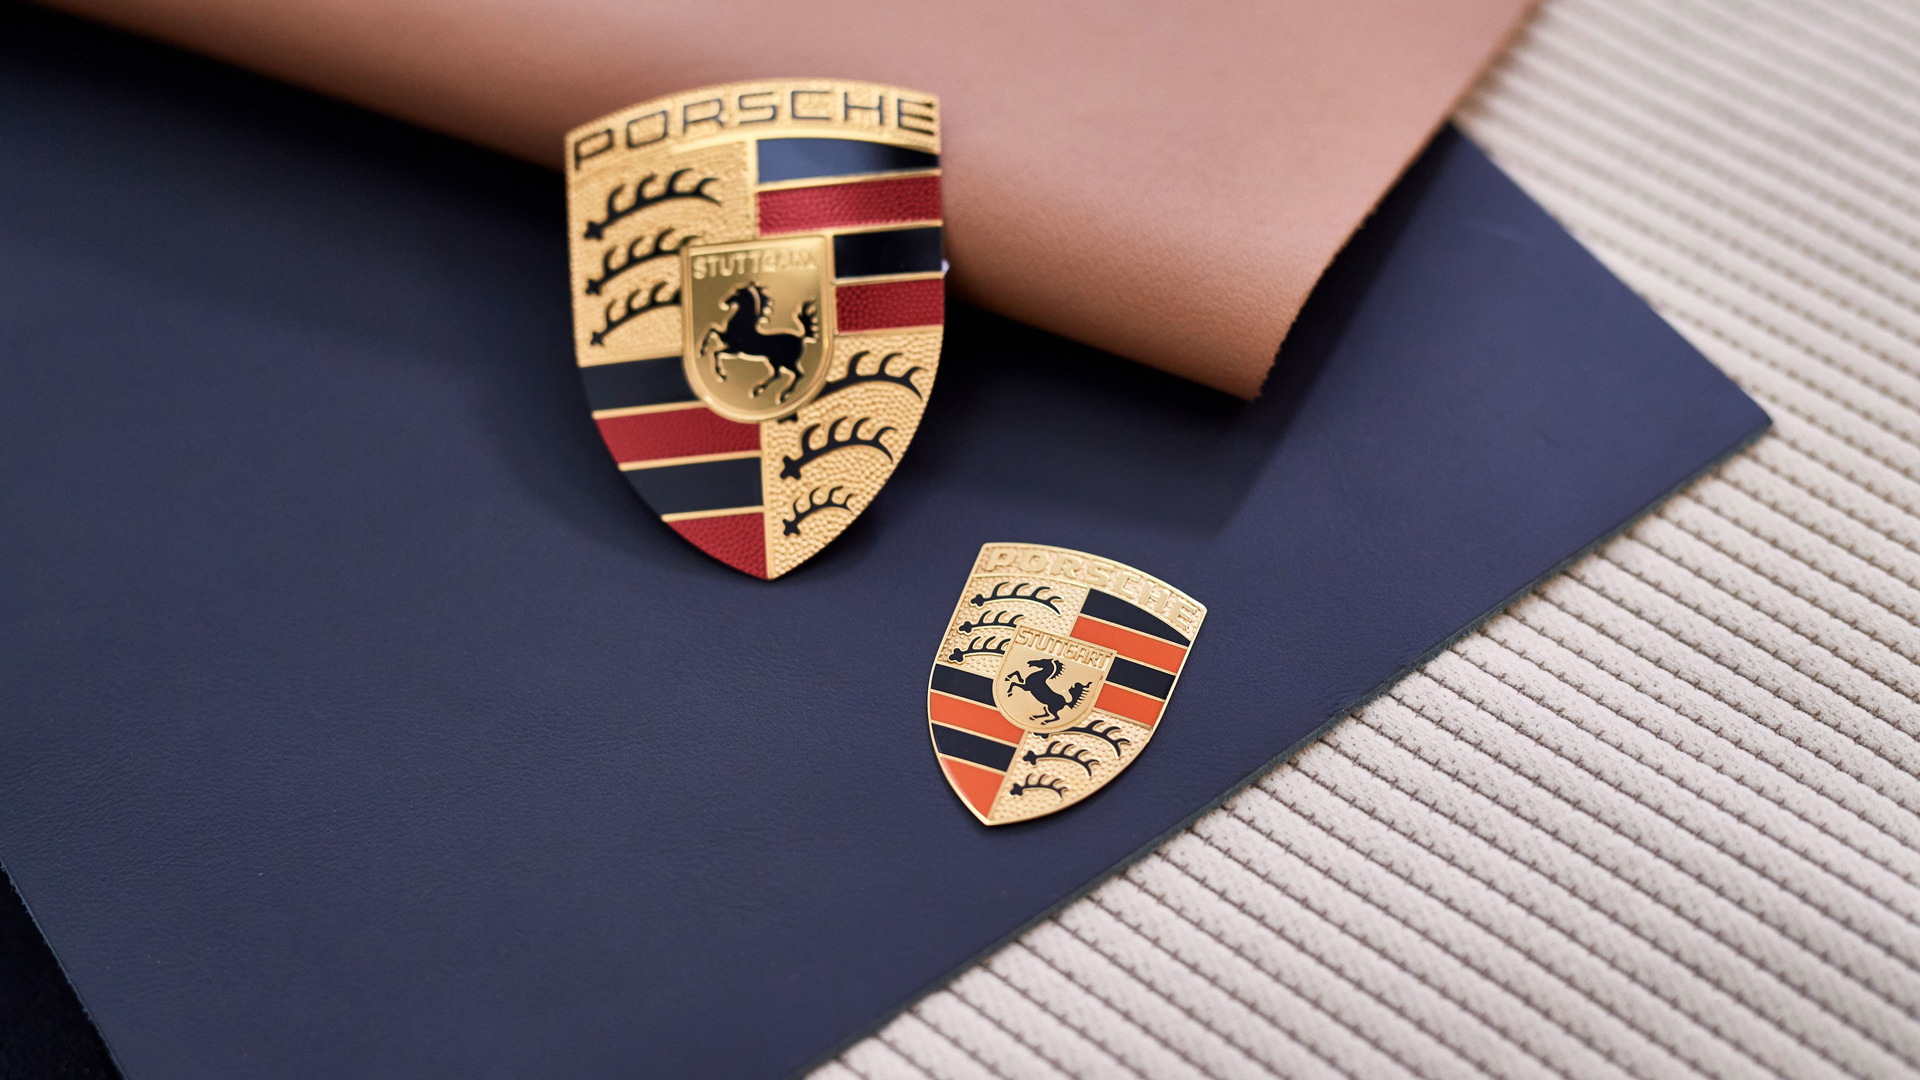 Porsche Heritage Design